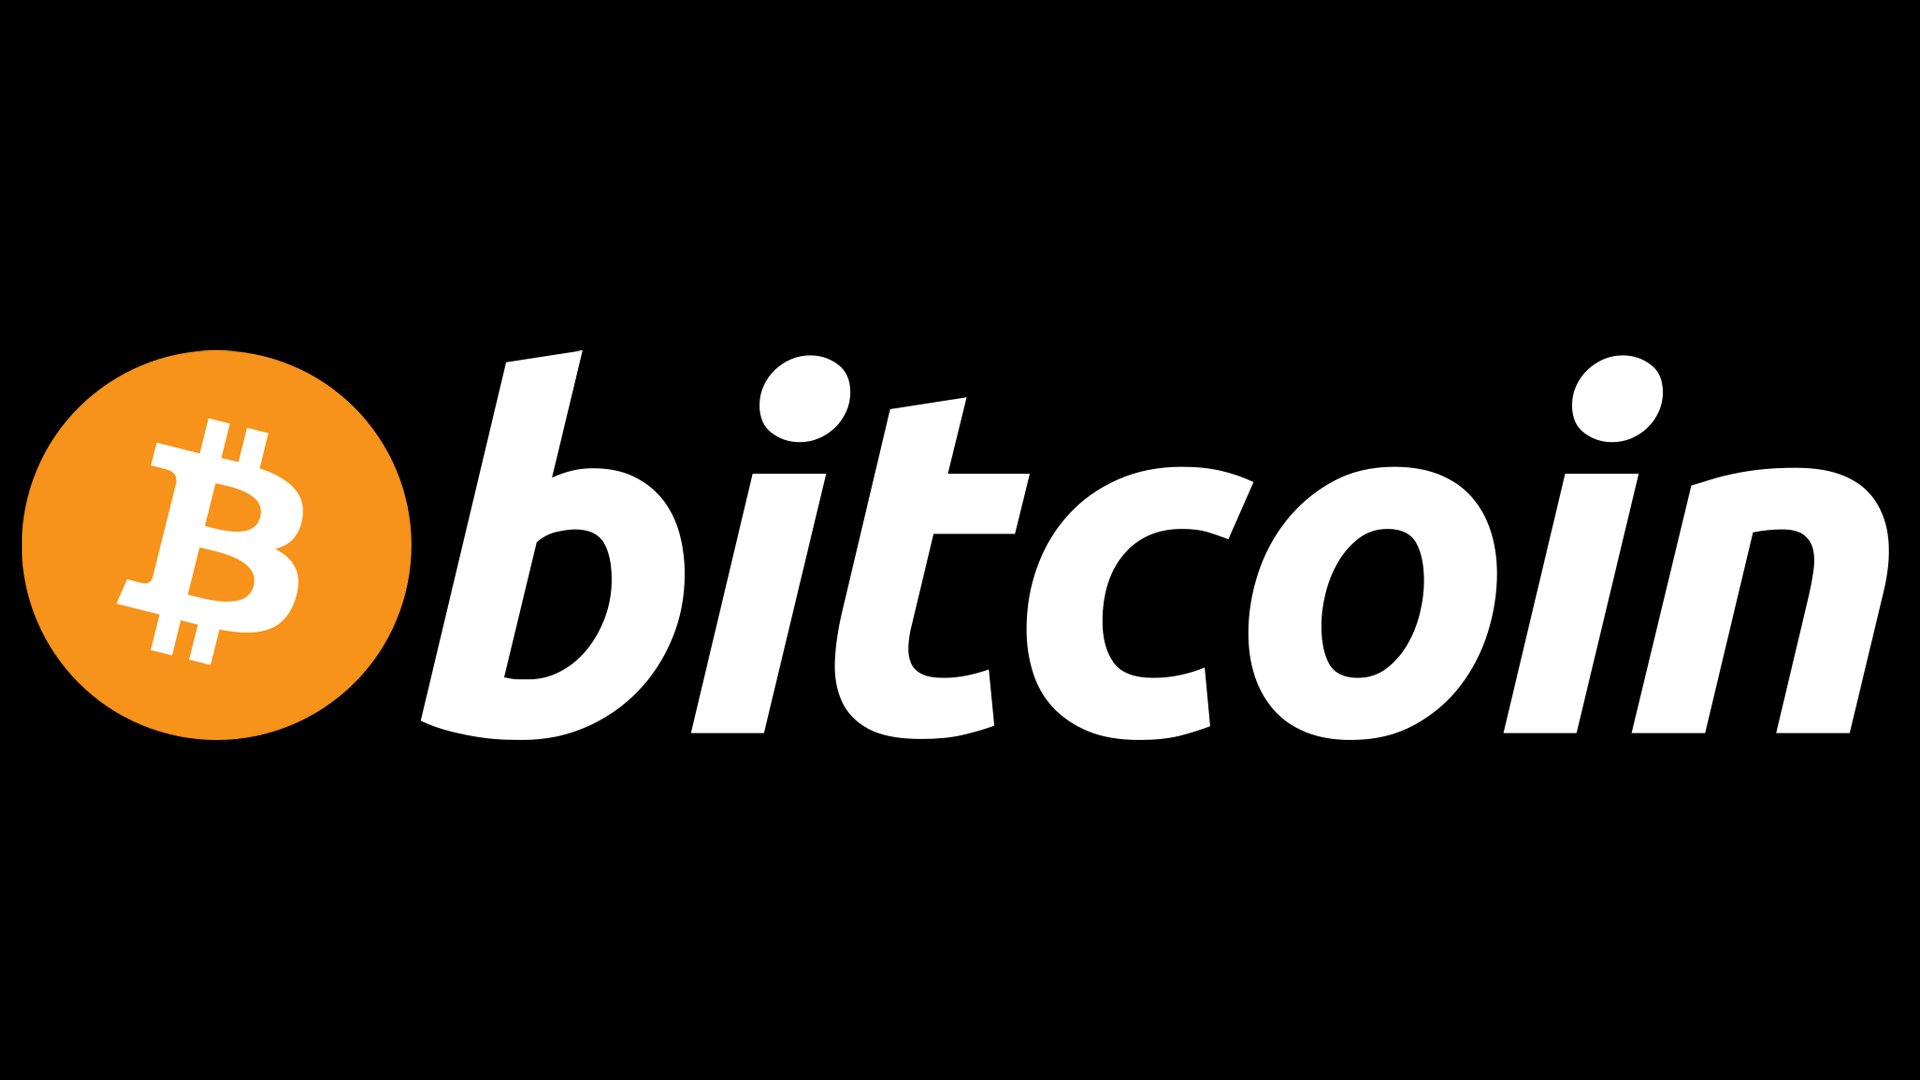 Bitcoin - News articles text corpora | Kaggle